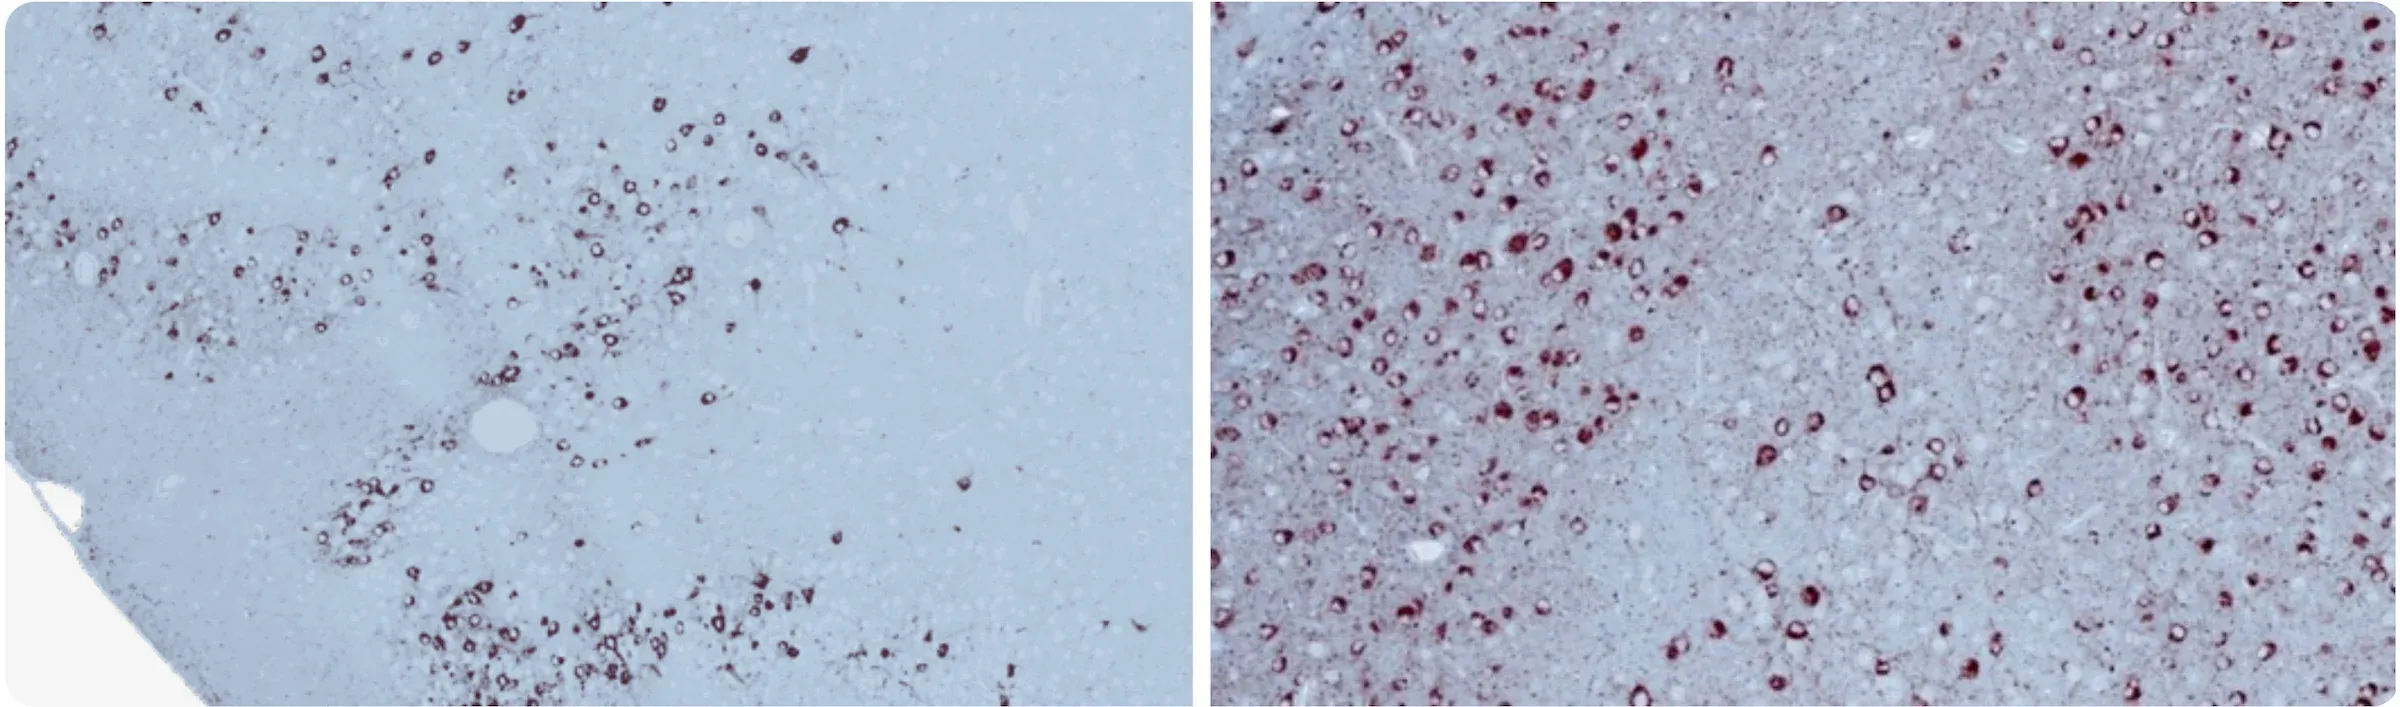 Deux coupes de tissu cérébral colorées pour révéler la protéine tau, associée à la maladie d'Alzheimer (MA), mettant en évidence les différences d'accumulation de tau dans l'hippocampe (HC) et le cortex (Ctx).